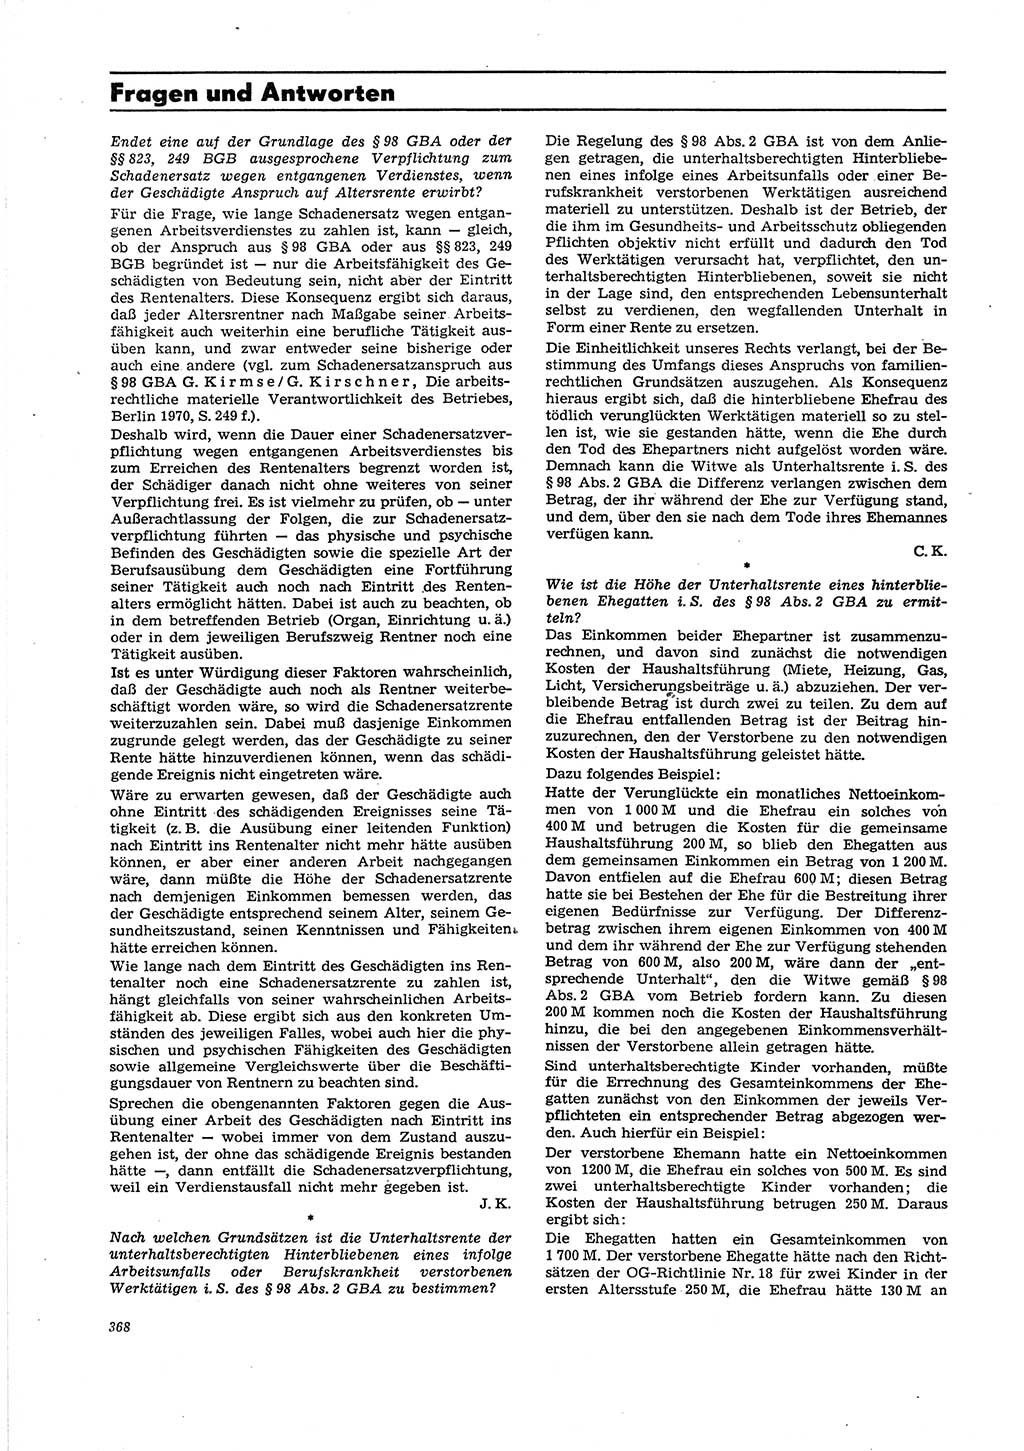 Neue Justiz (NJ), Zeitschrift für Recht und Rechtswissenschaft [Deutsche Demokratische Republik (DDR)], 29. Jahrgang 1975, Seite 368 (NJ DDR 1975, S. 368)